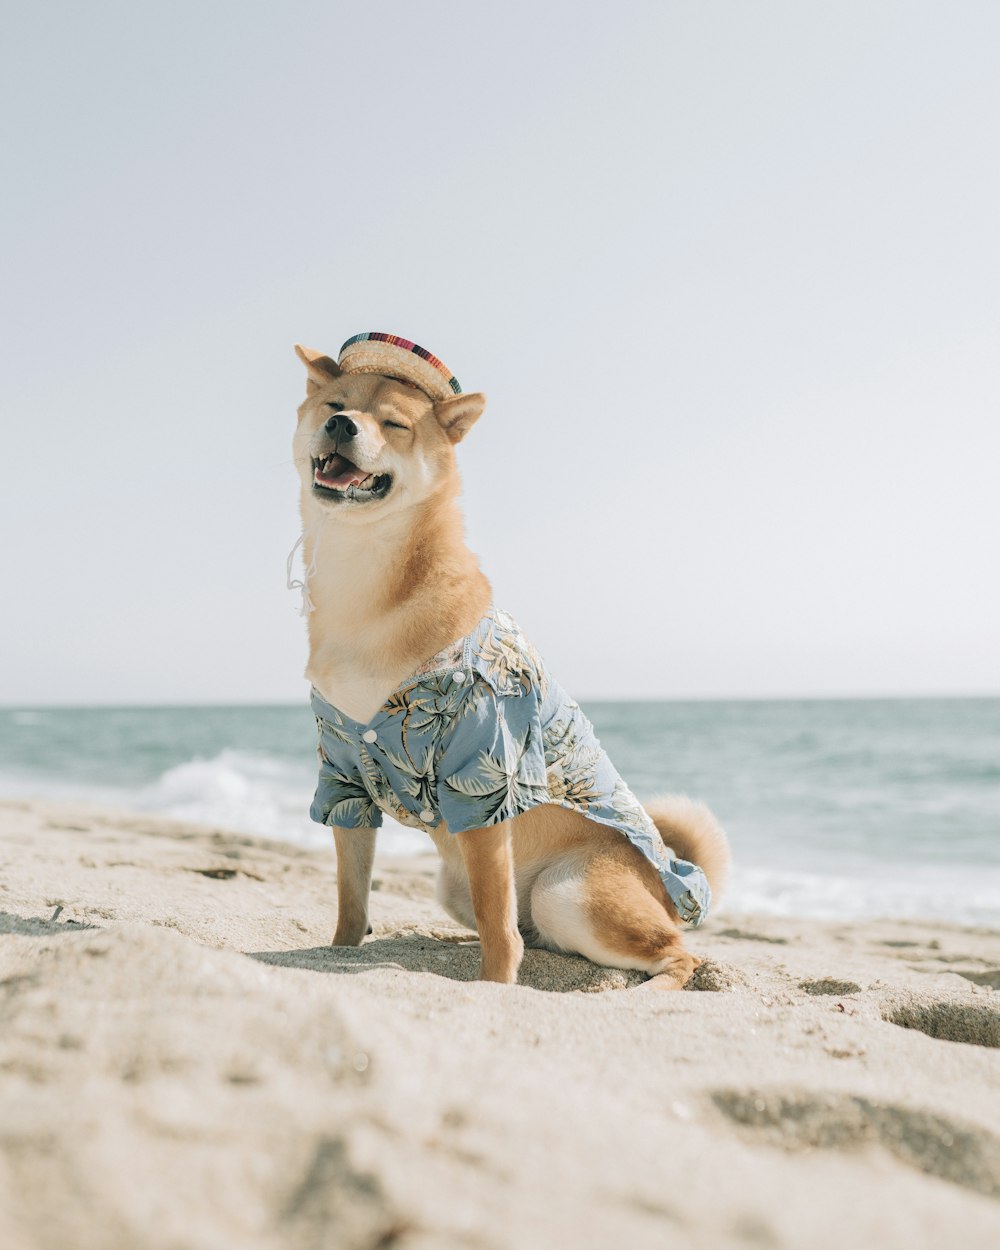 cane a pelo corto marrone e bianco sulla spiaggia durante il giorno